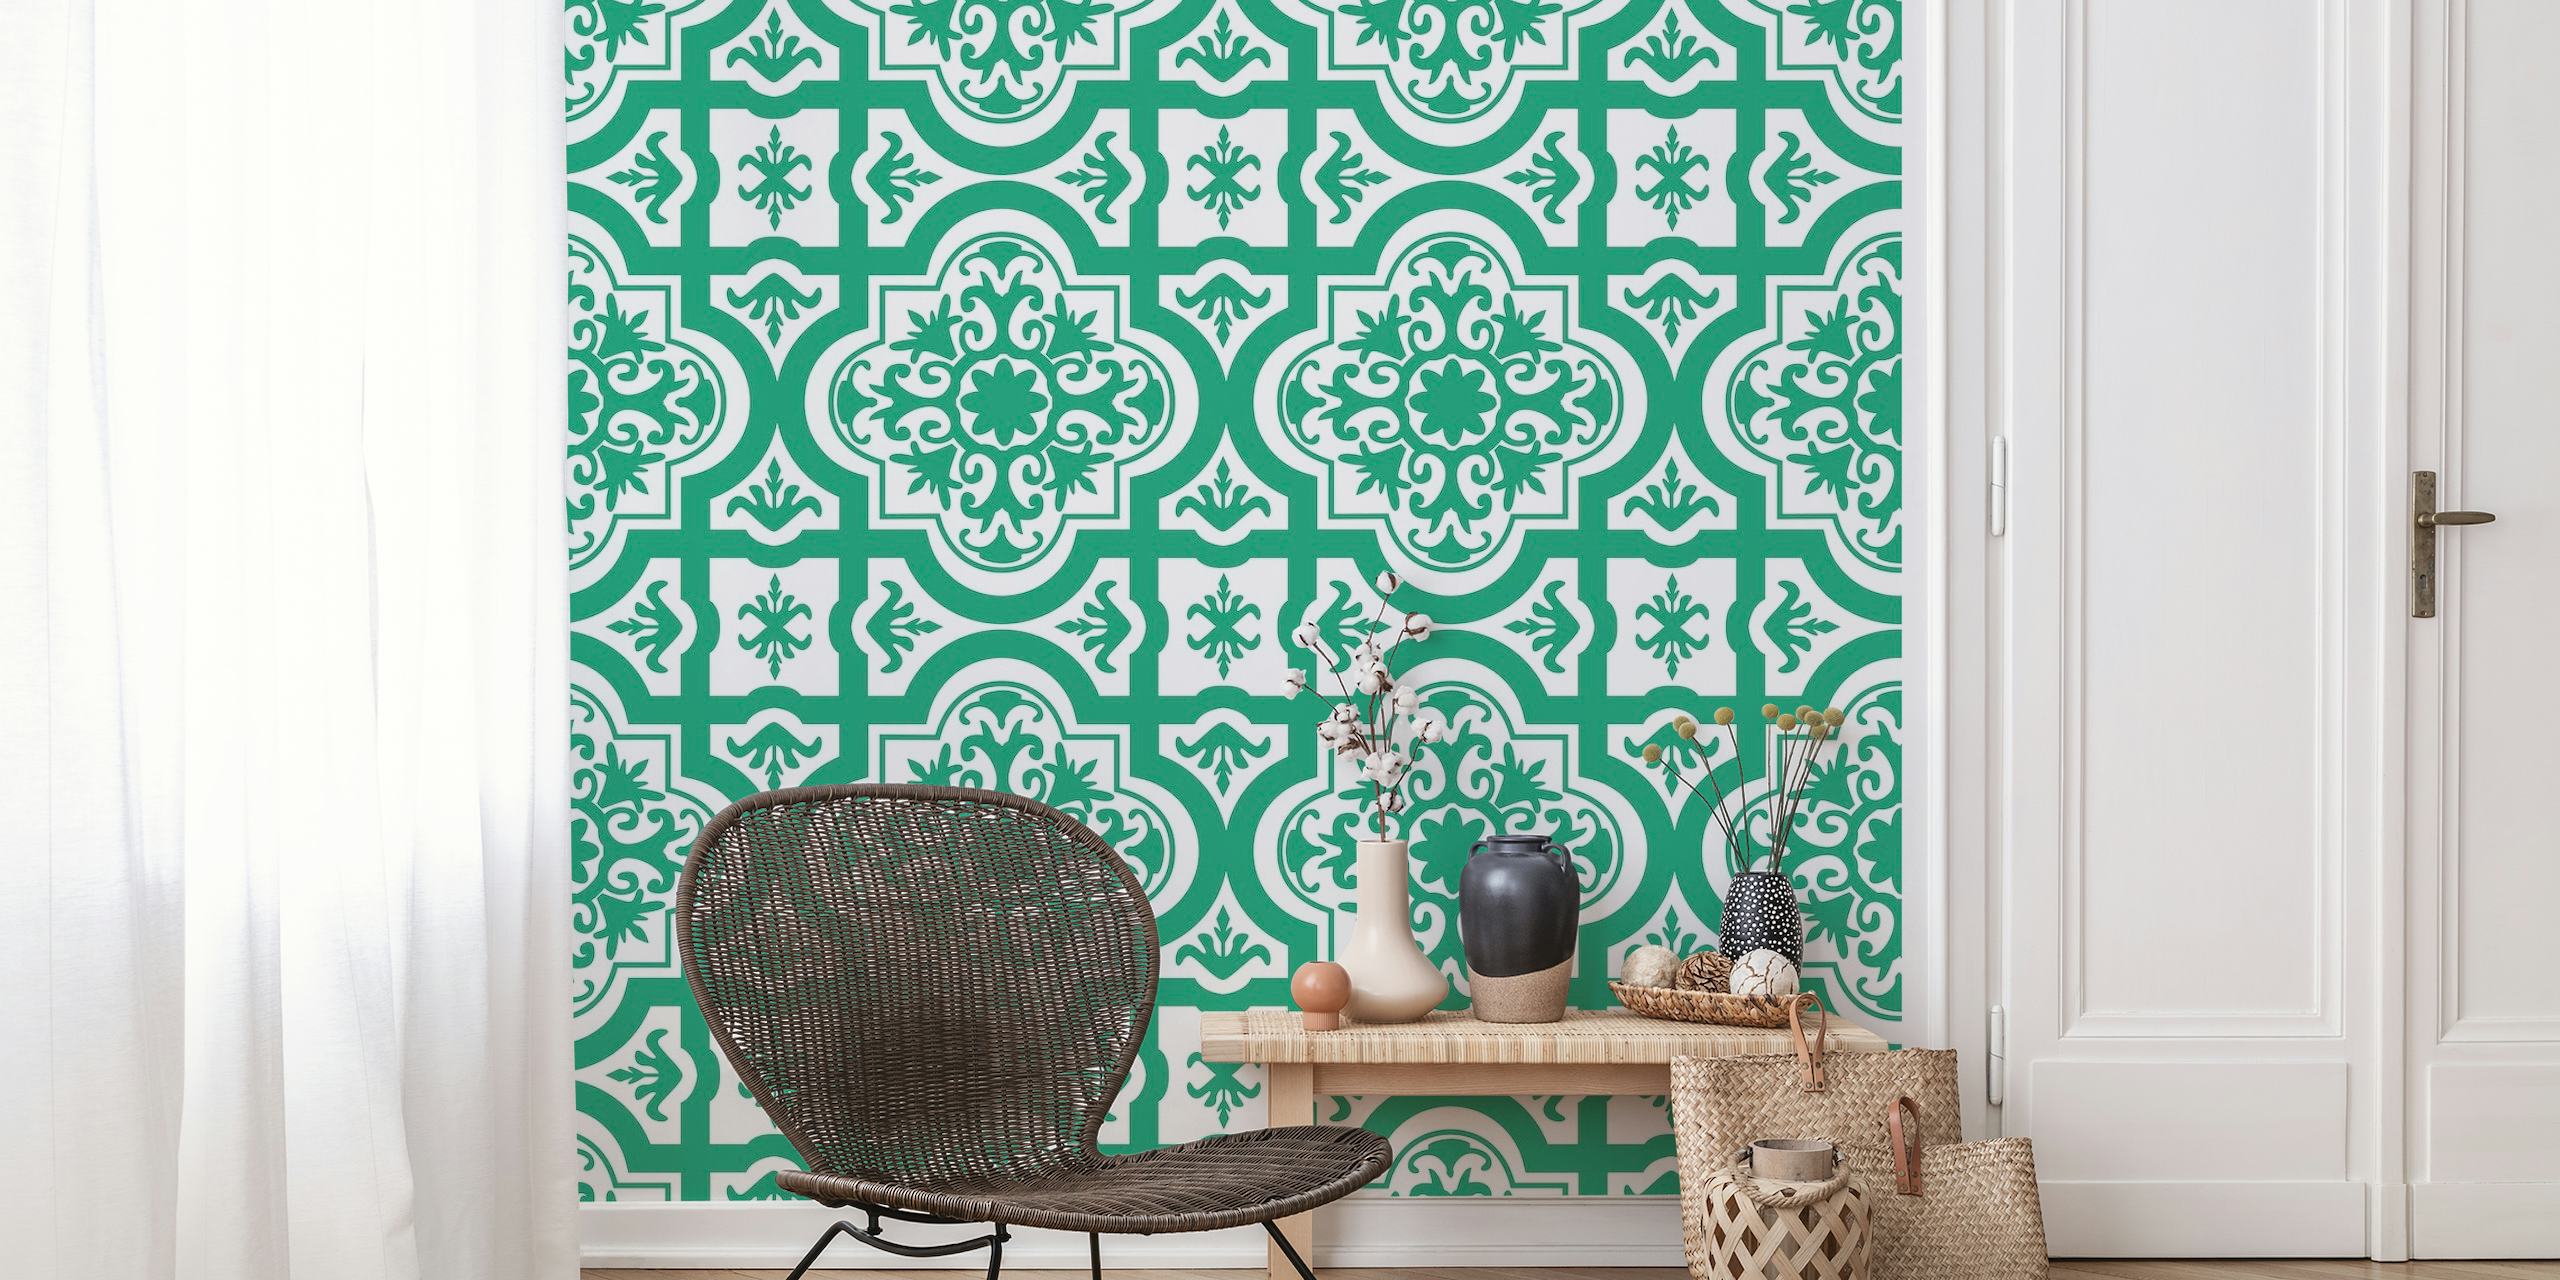 Muurschildering met Turks groen en wit sierlijk patroon